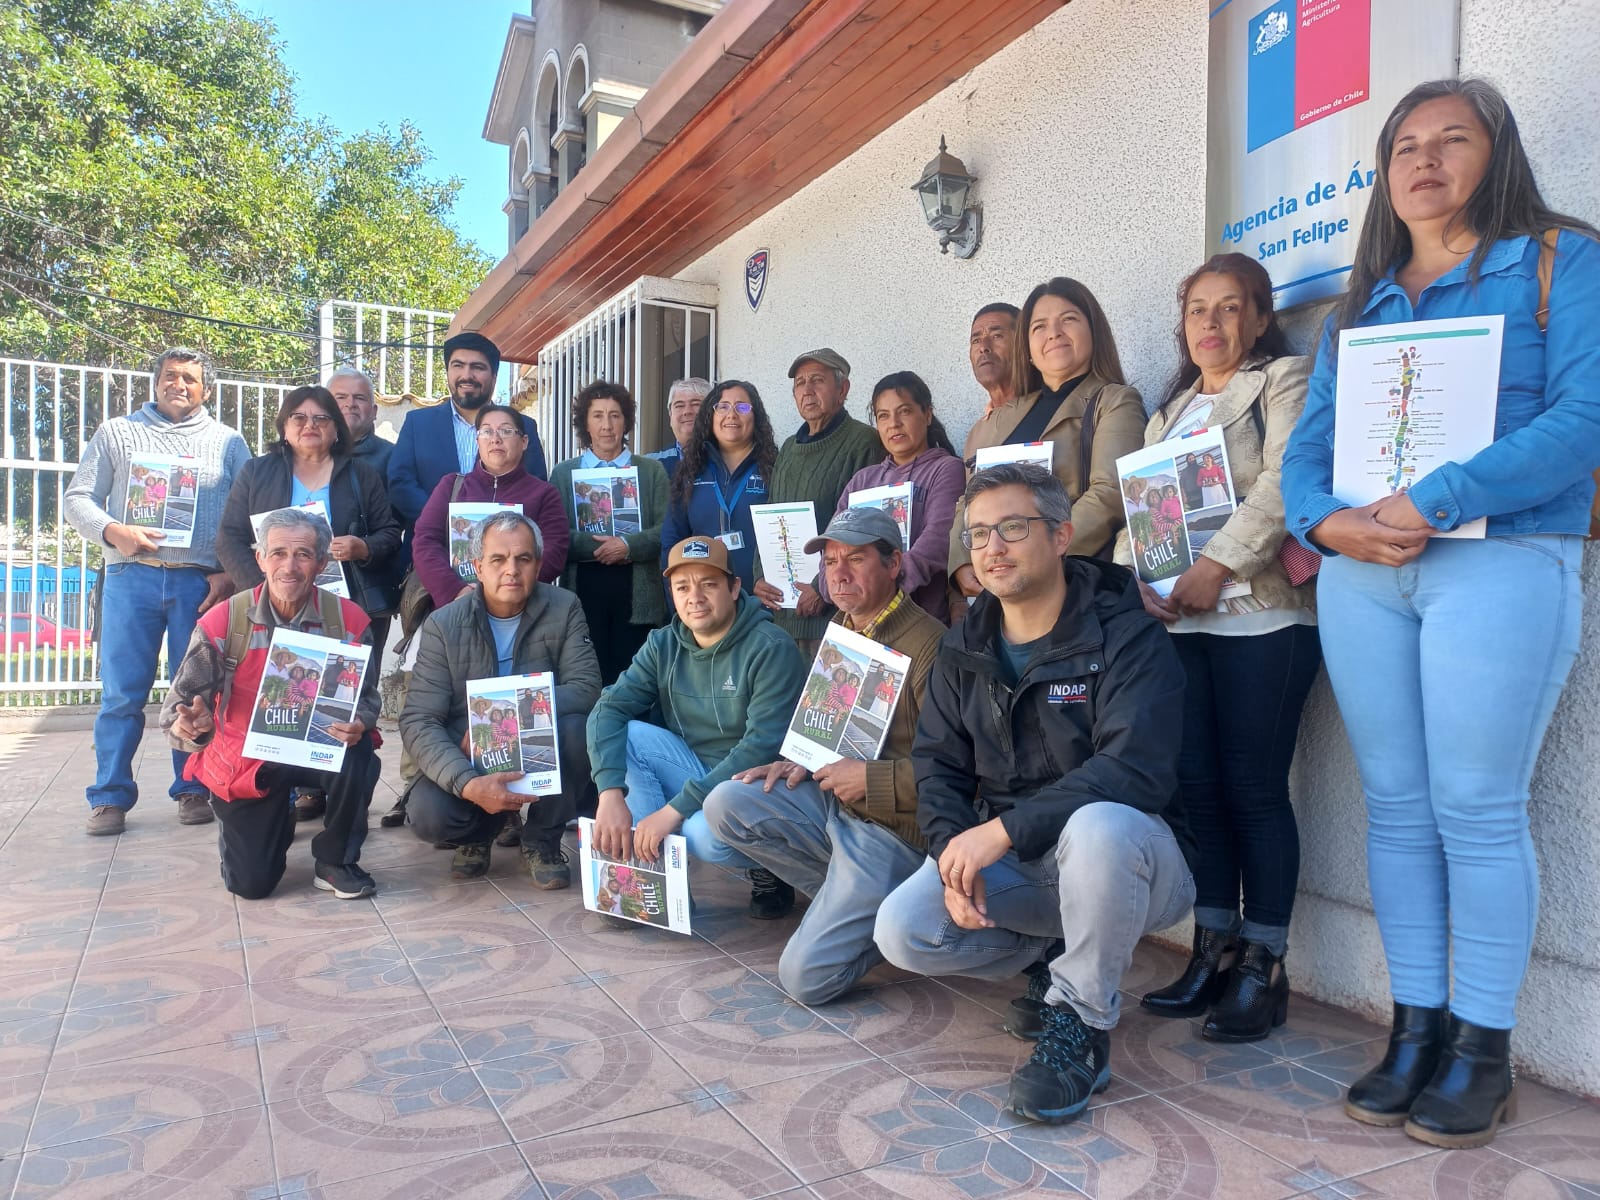 ACONCAGUA: Agricultores del Valle de Aconcagua reciben bono de rehabilitación productiva tras inundaciones de Junio